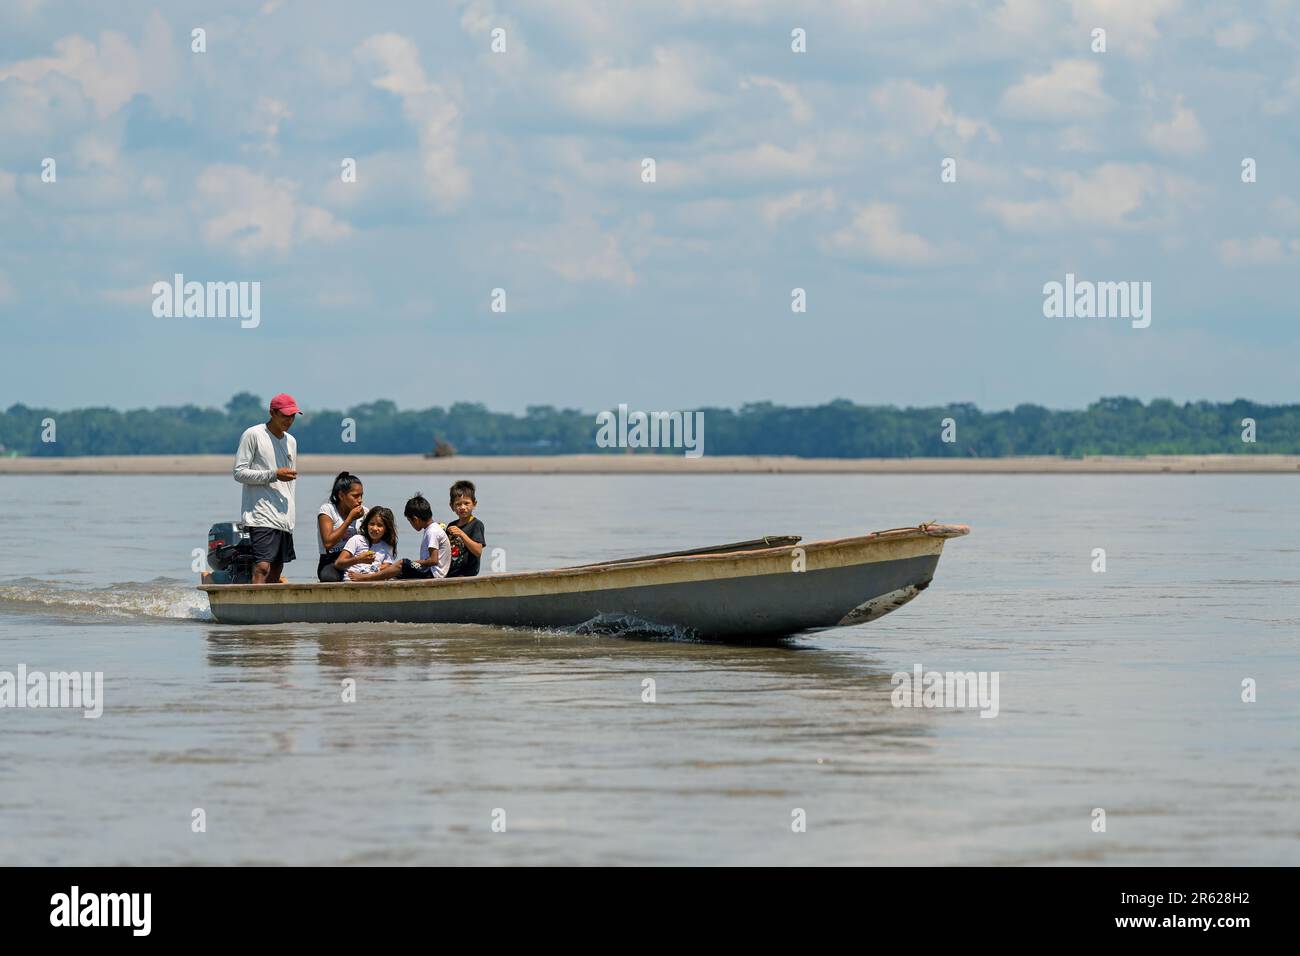 People on motorized canoe transport, Napo River, Yasuni national park, Amazon rainforest, Ecuador. Stock Photo